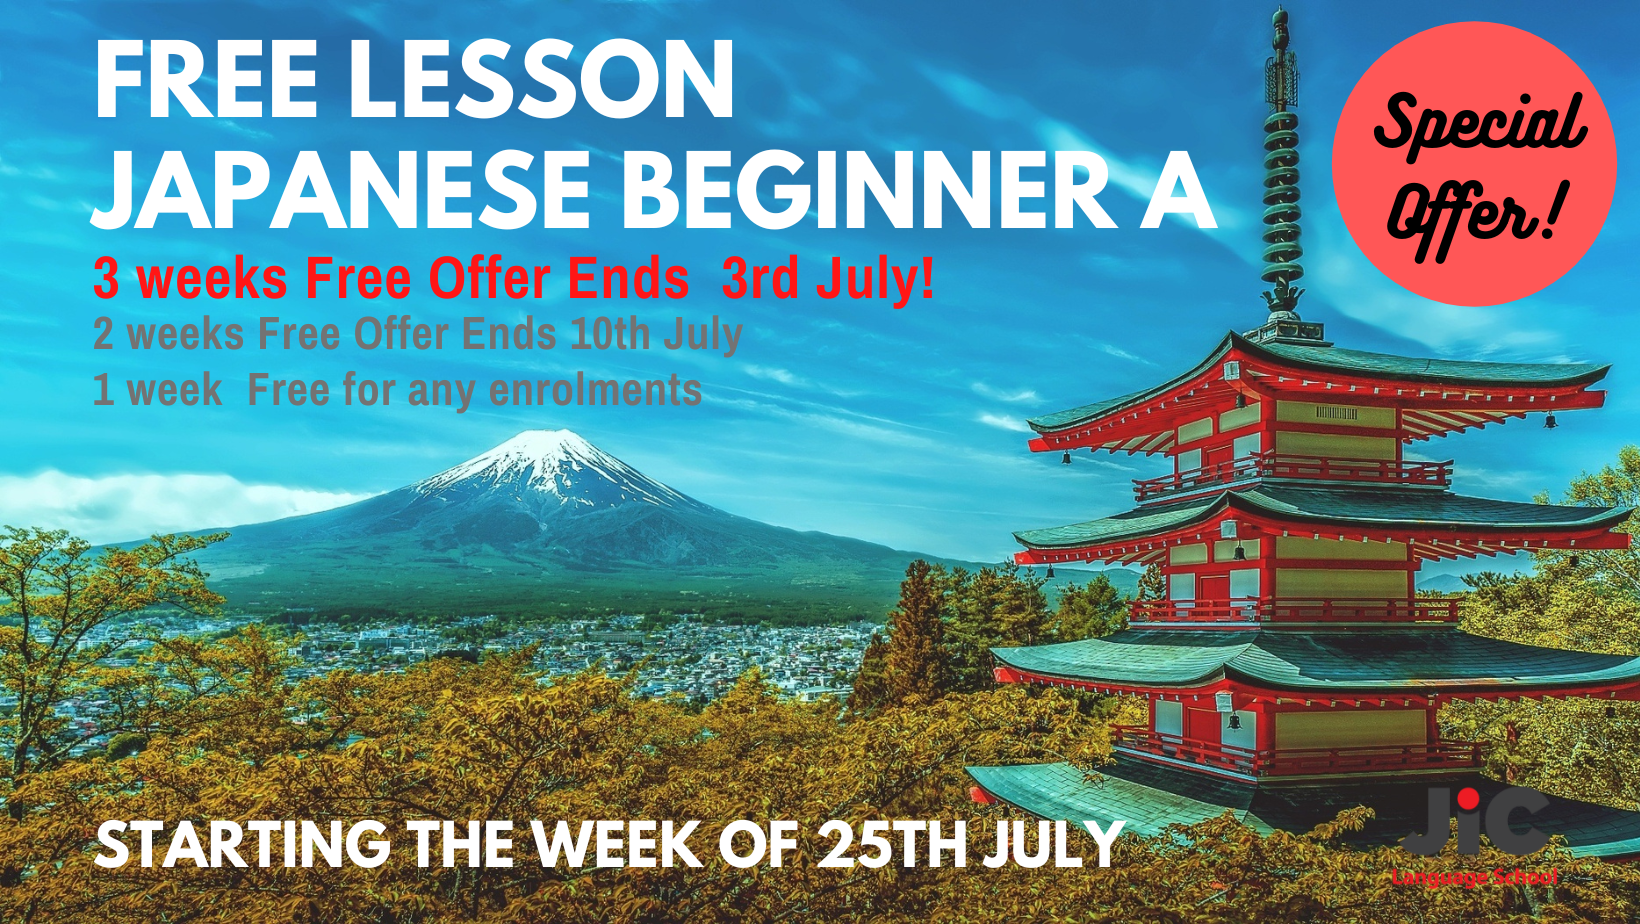 Free Japanese Beginner Lesson